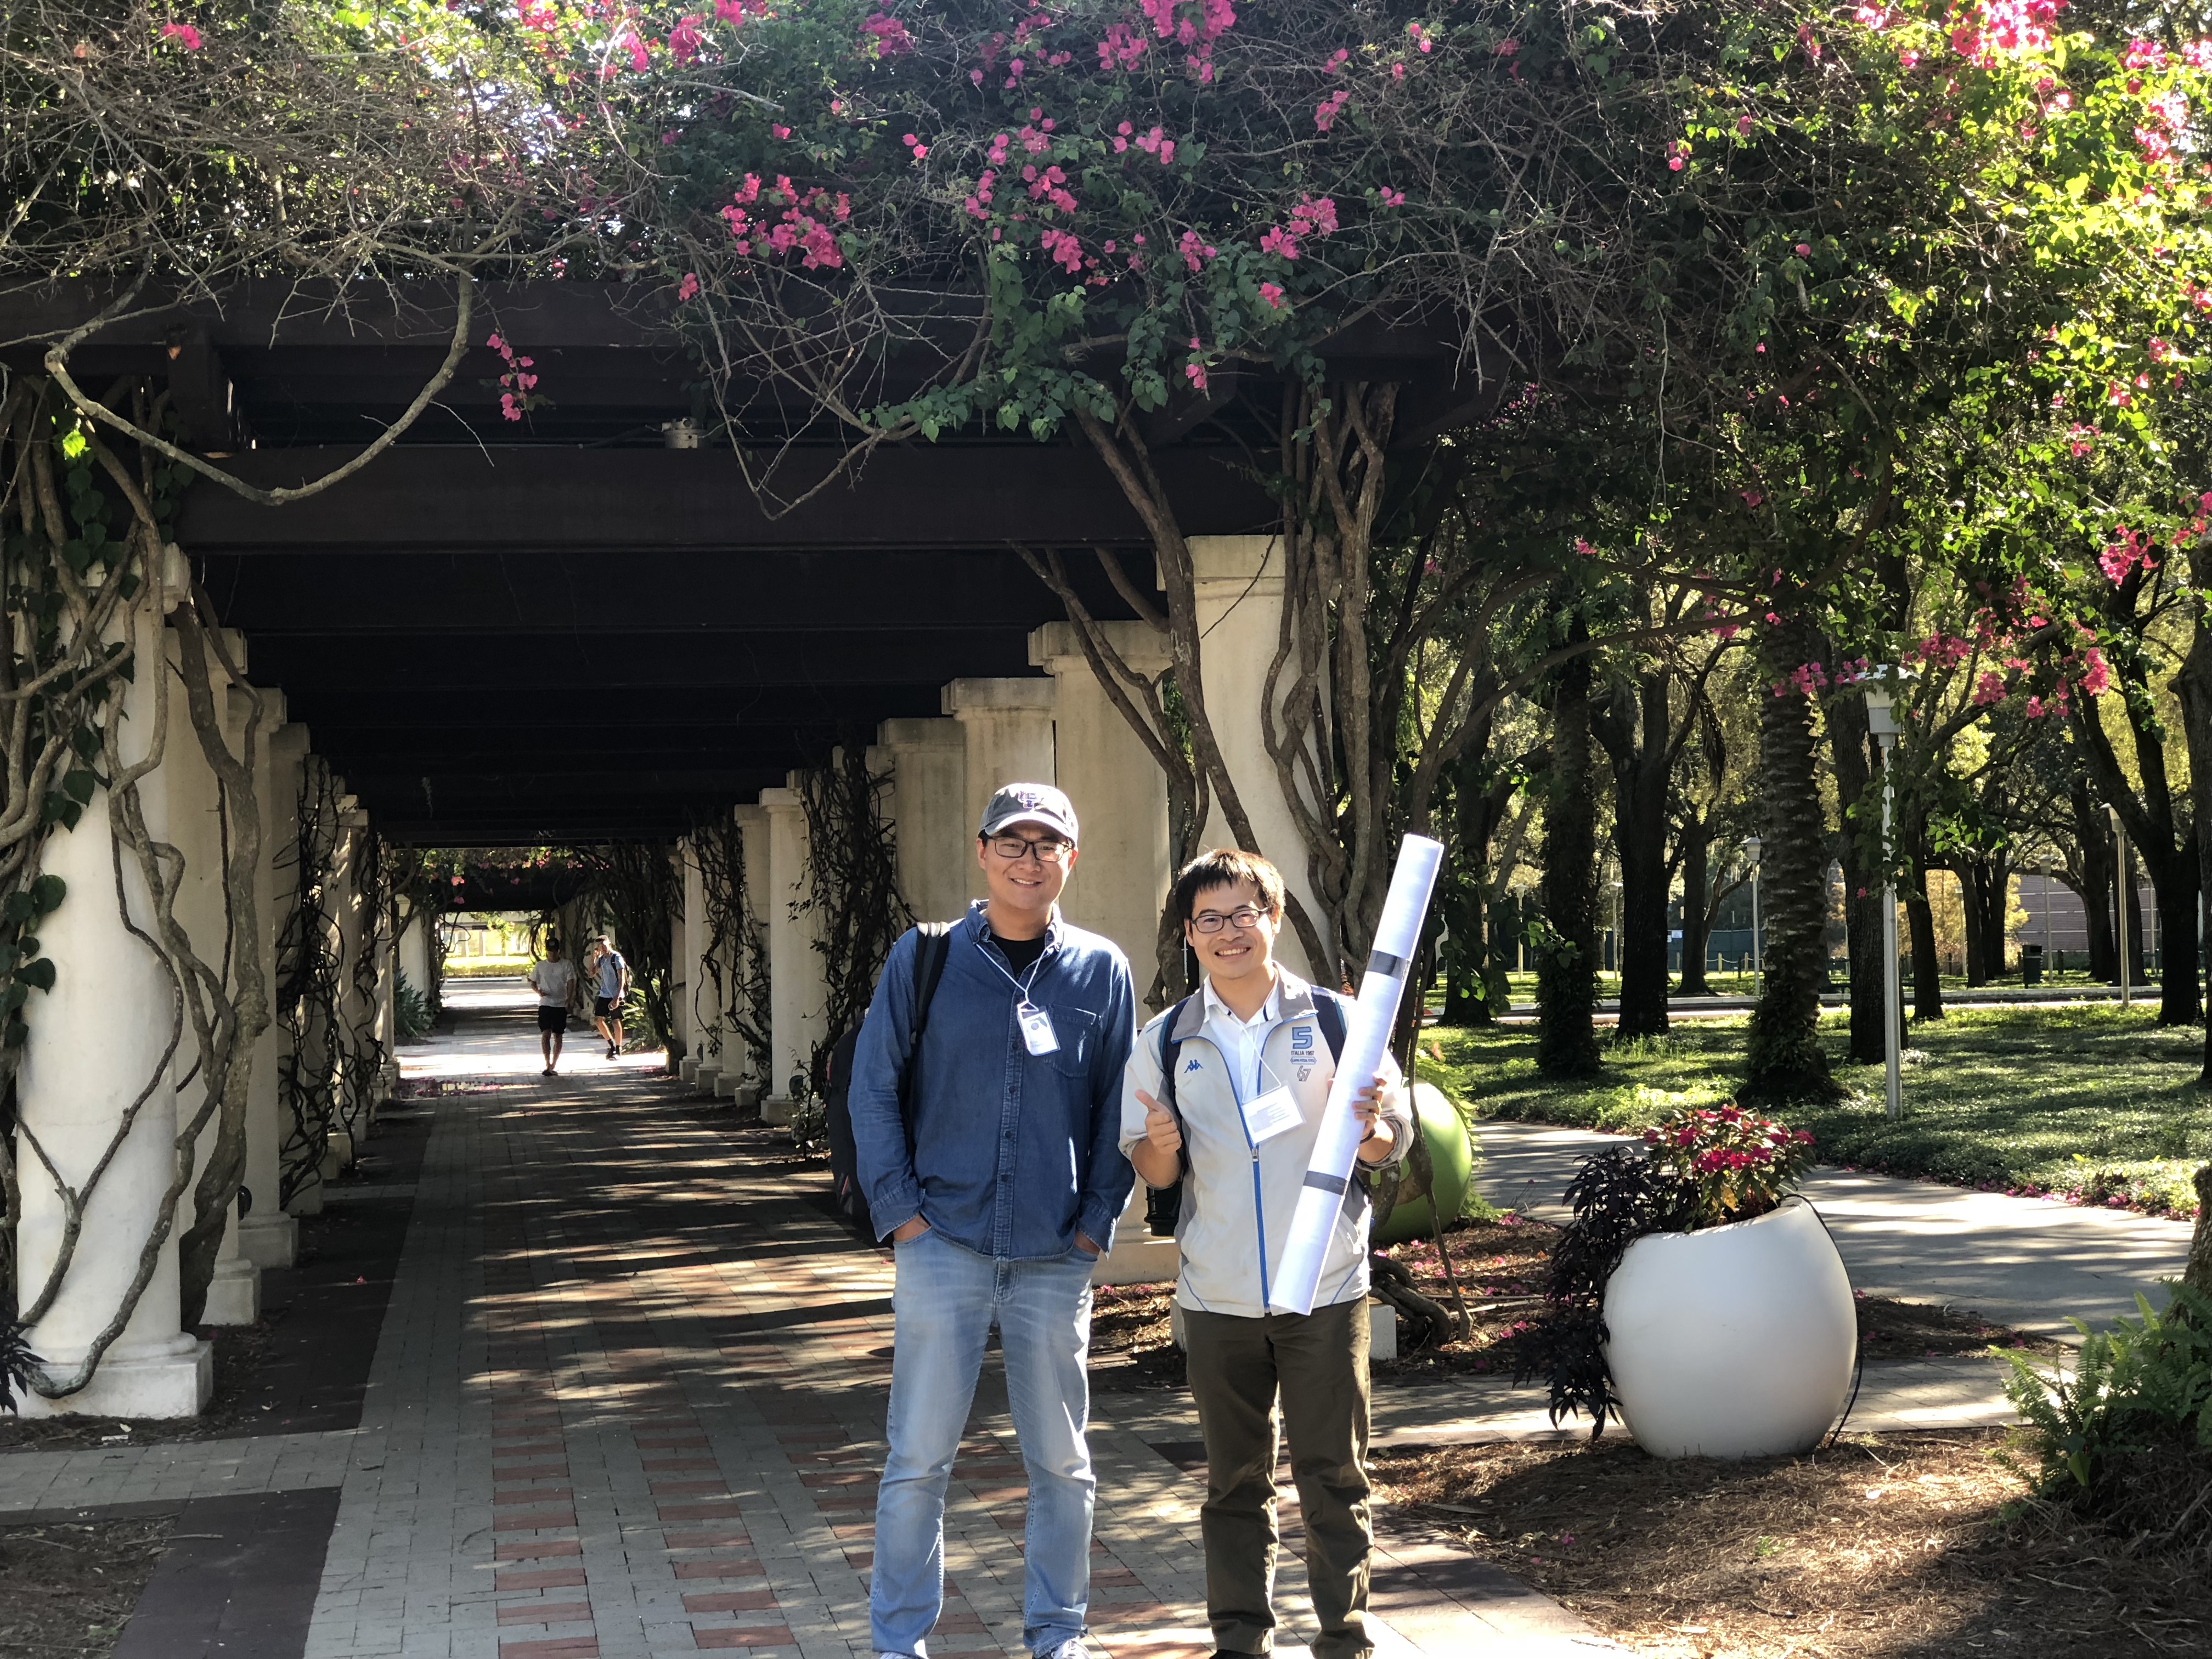 Yucheng and Kengyu at the Florida Psycholinguistics Meeting 2018